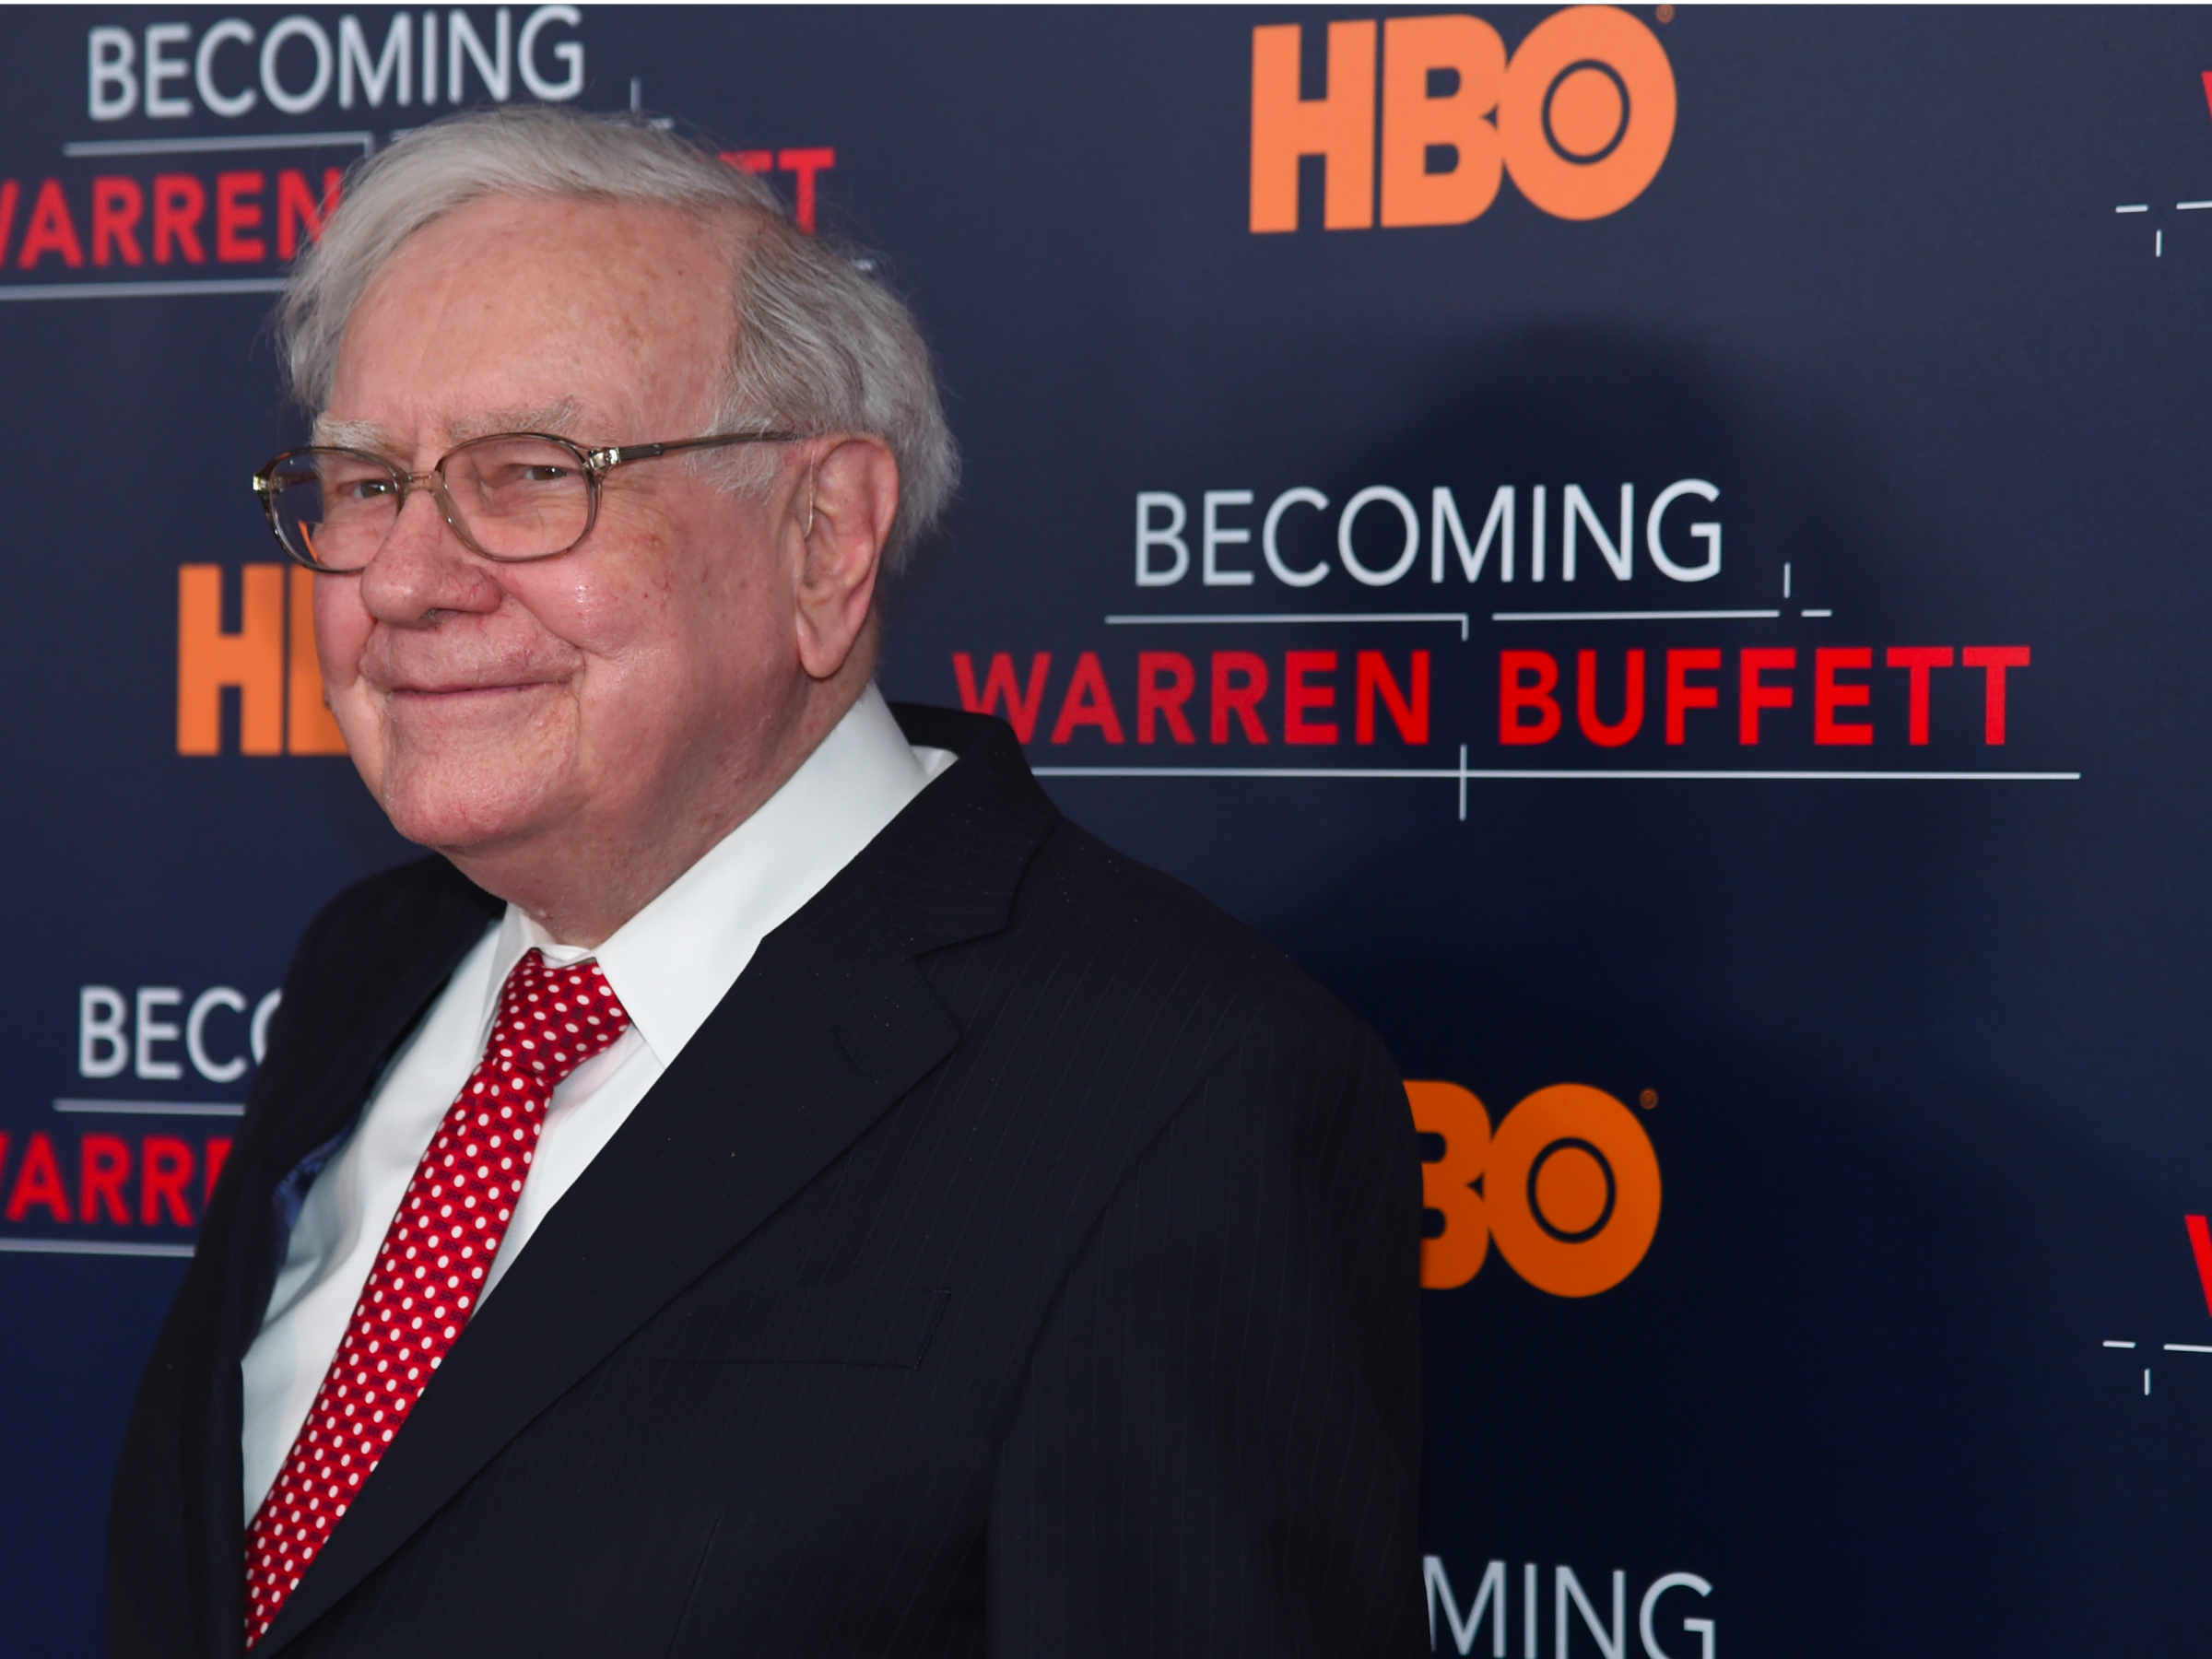 Warren Buffet 2